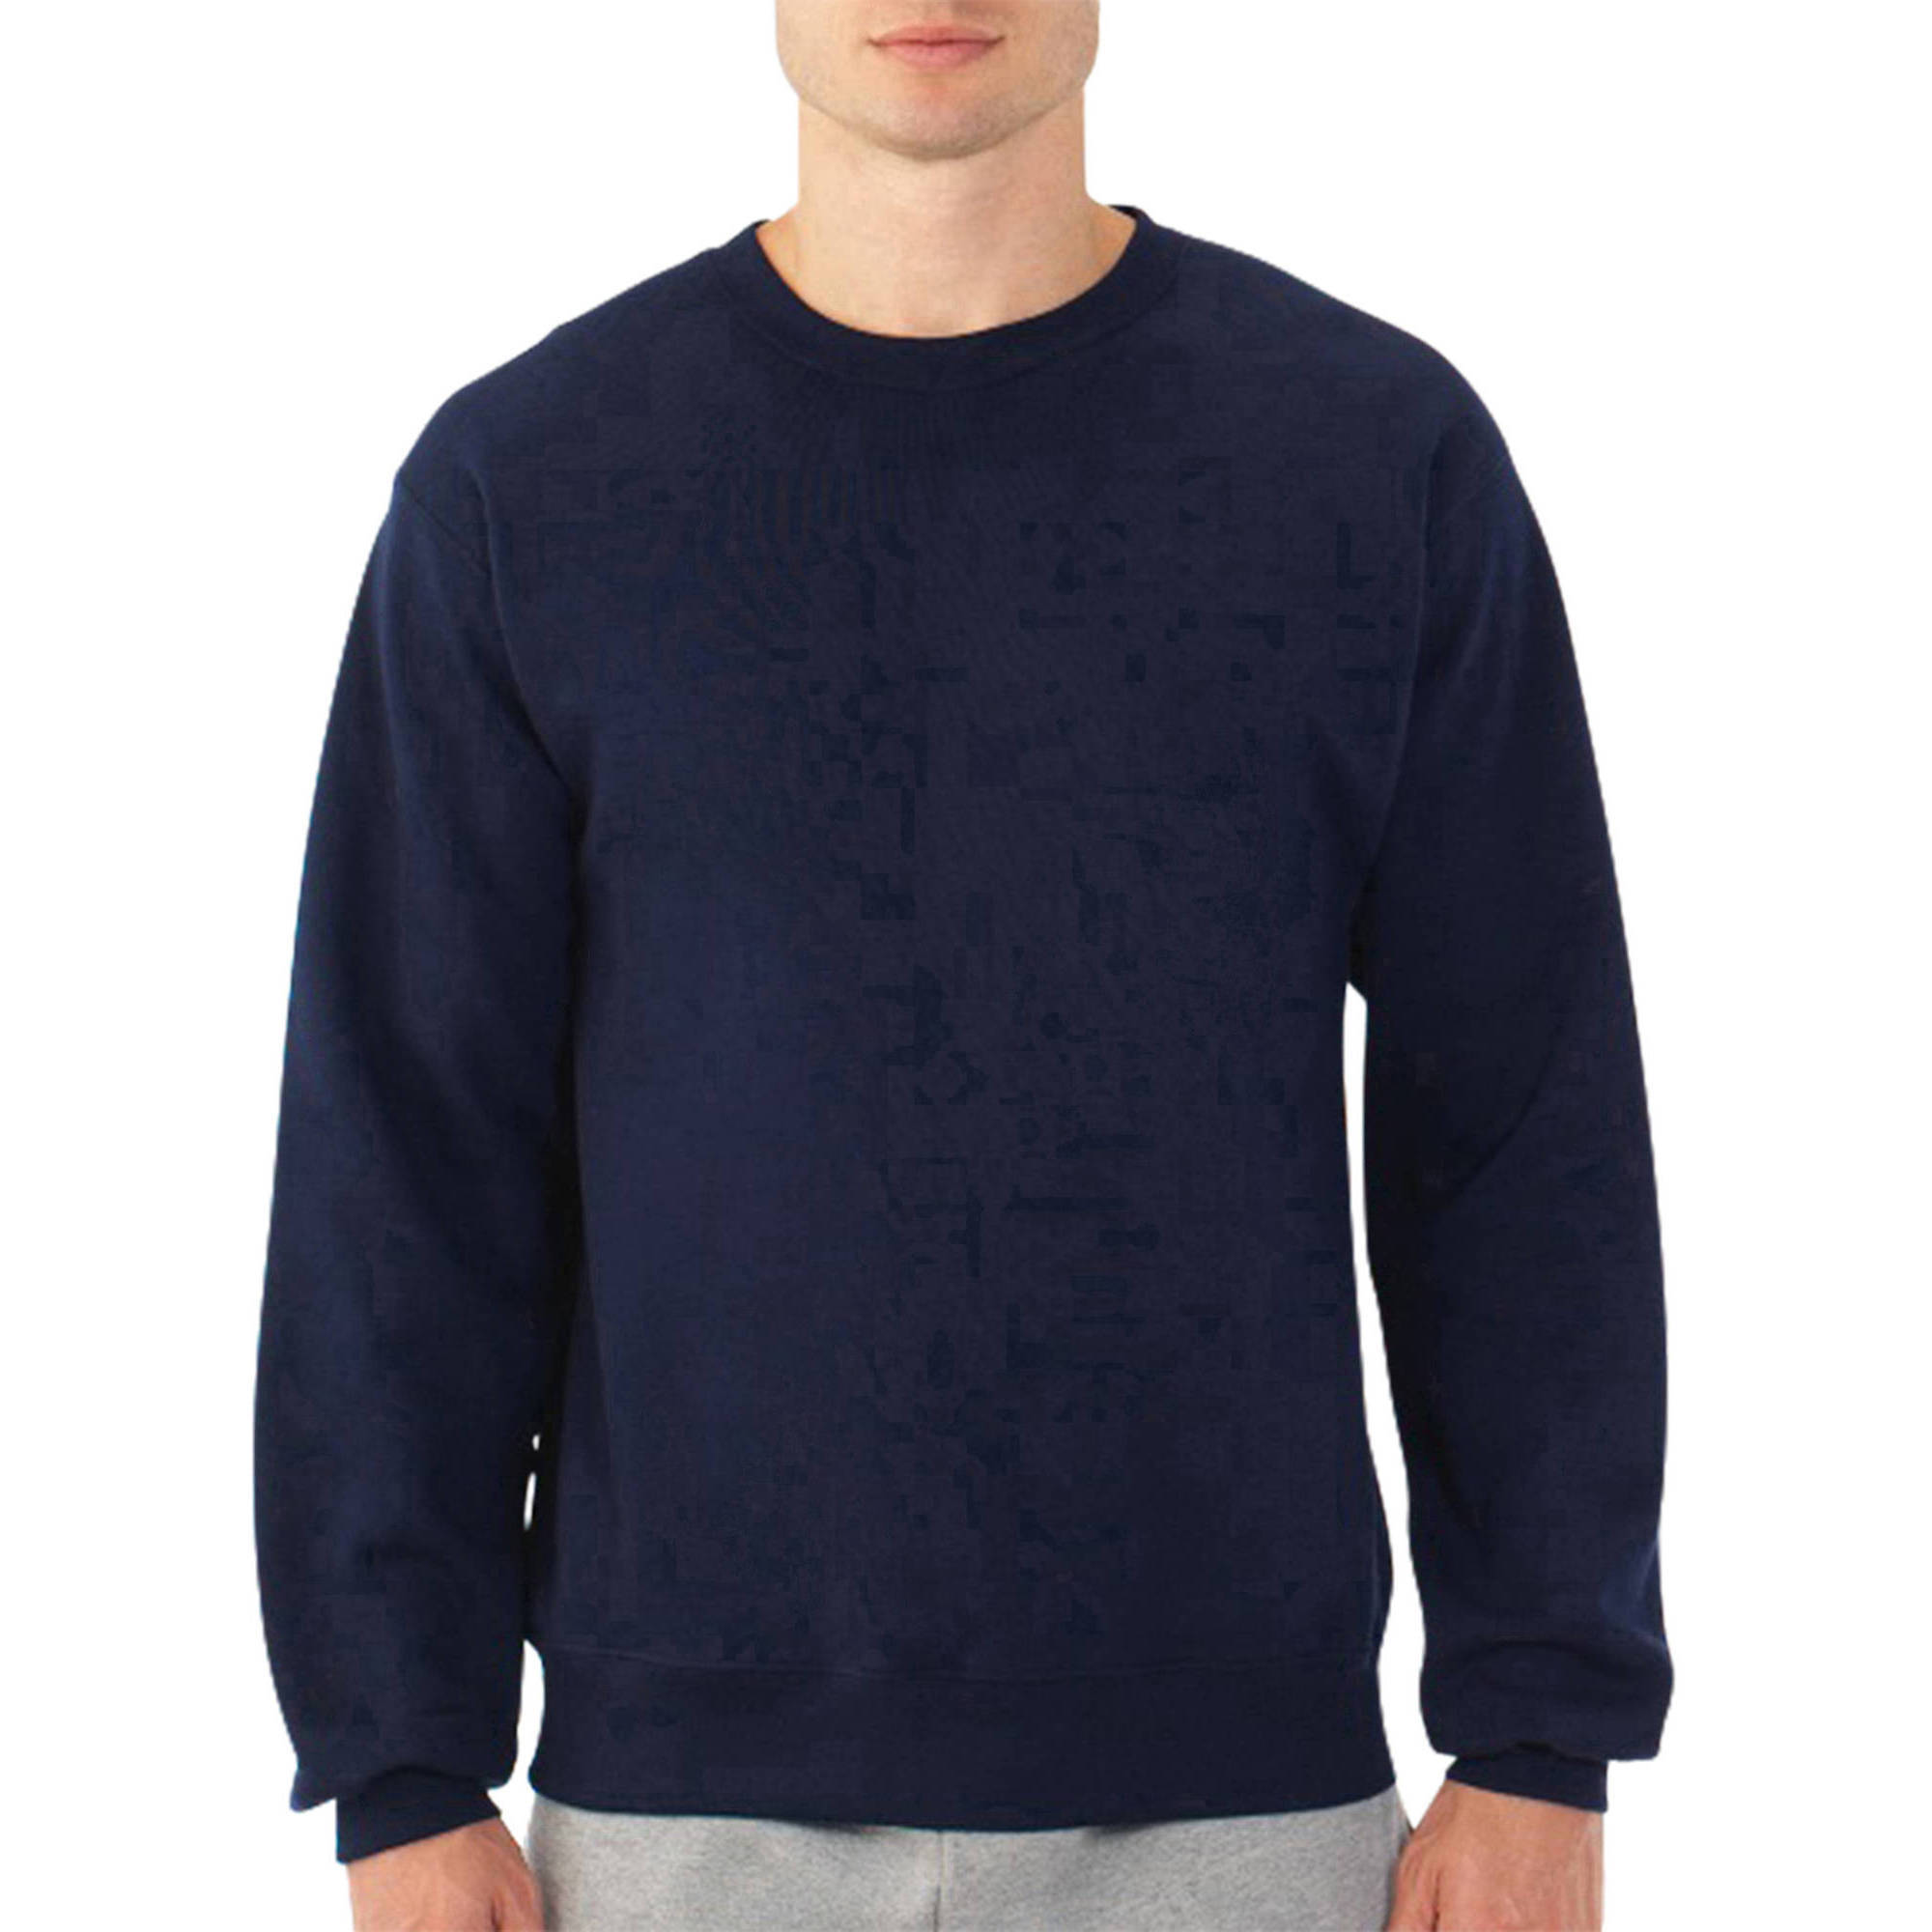 Men's Fleece Crew Sweatshirt - image 1 of 4